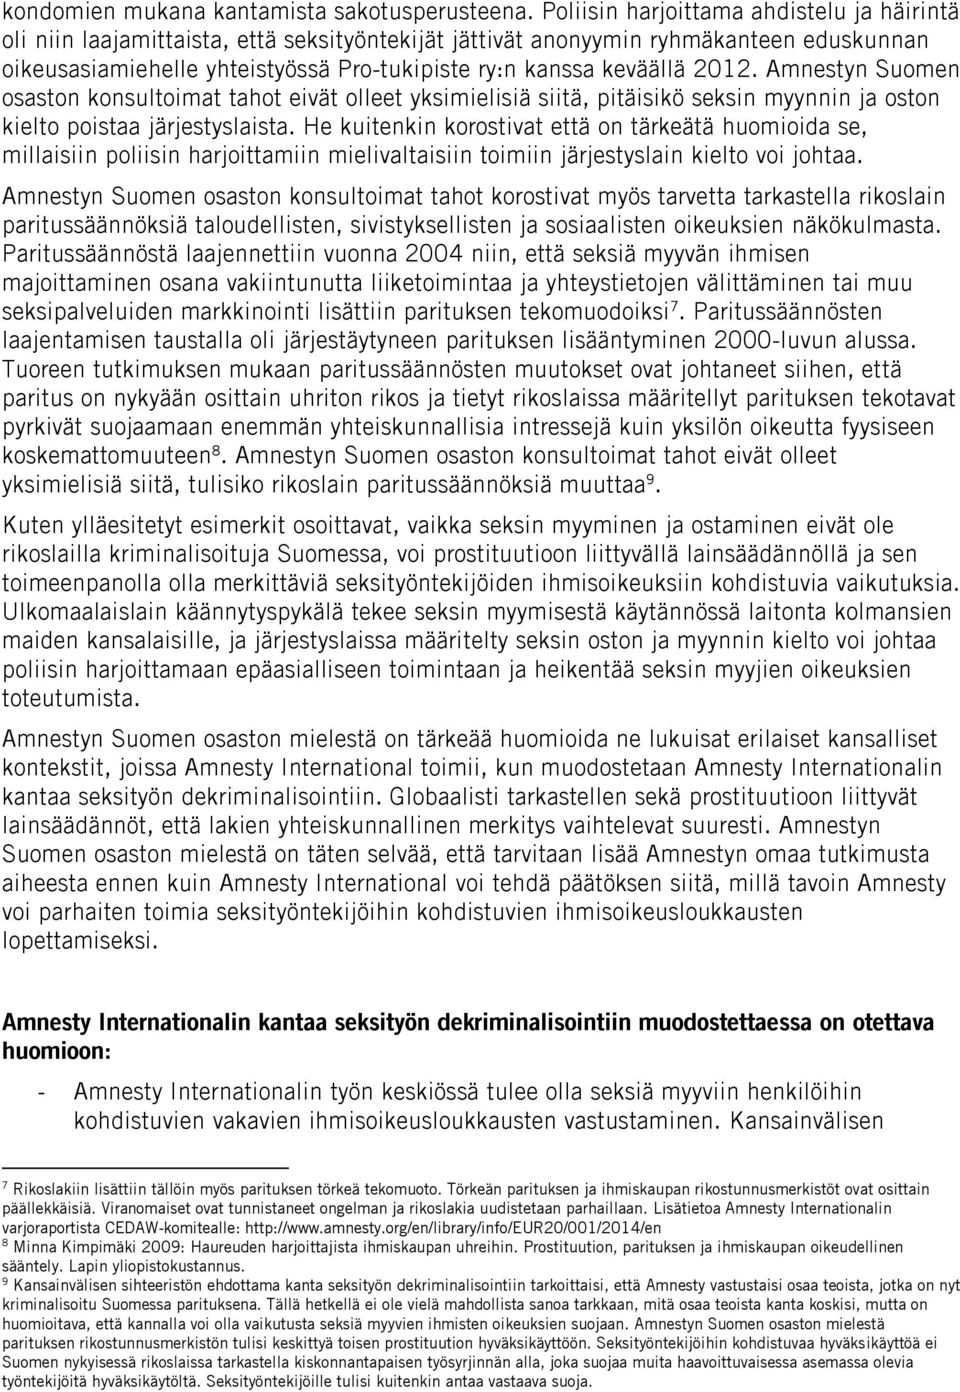 2012. Amnestyn Suomen osaston konsultoimat tahot eivät olleet yksimielisiä siitä, pitäisikö seksin myynnin ja oston kielto poistaa järjestyslaista.